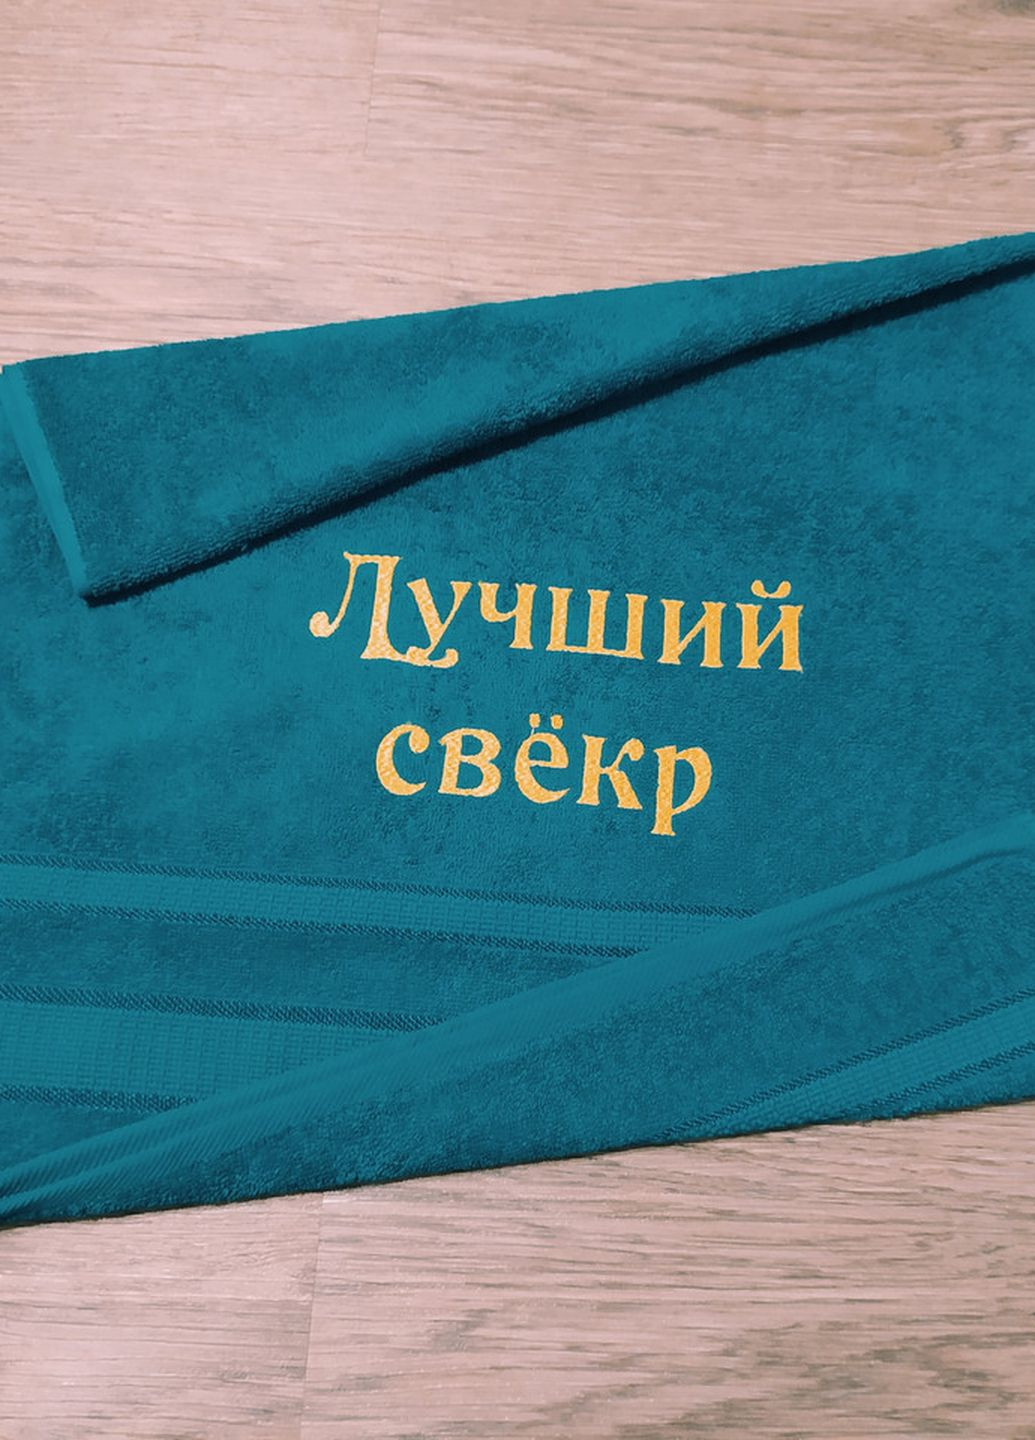 No Brand полотенце с вышивкой махровое лицевое 50*90 бирюзовый свекру 00121 однотонный бирюзовый производство - Украина